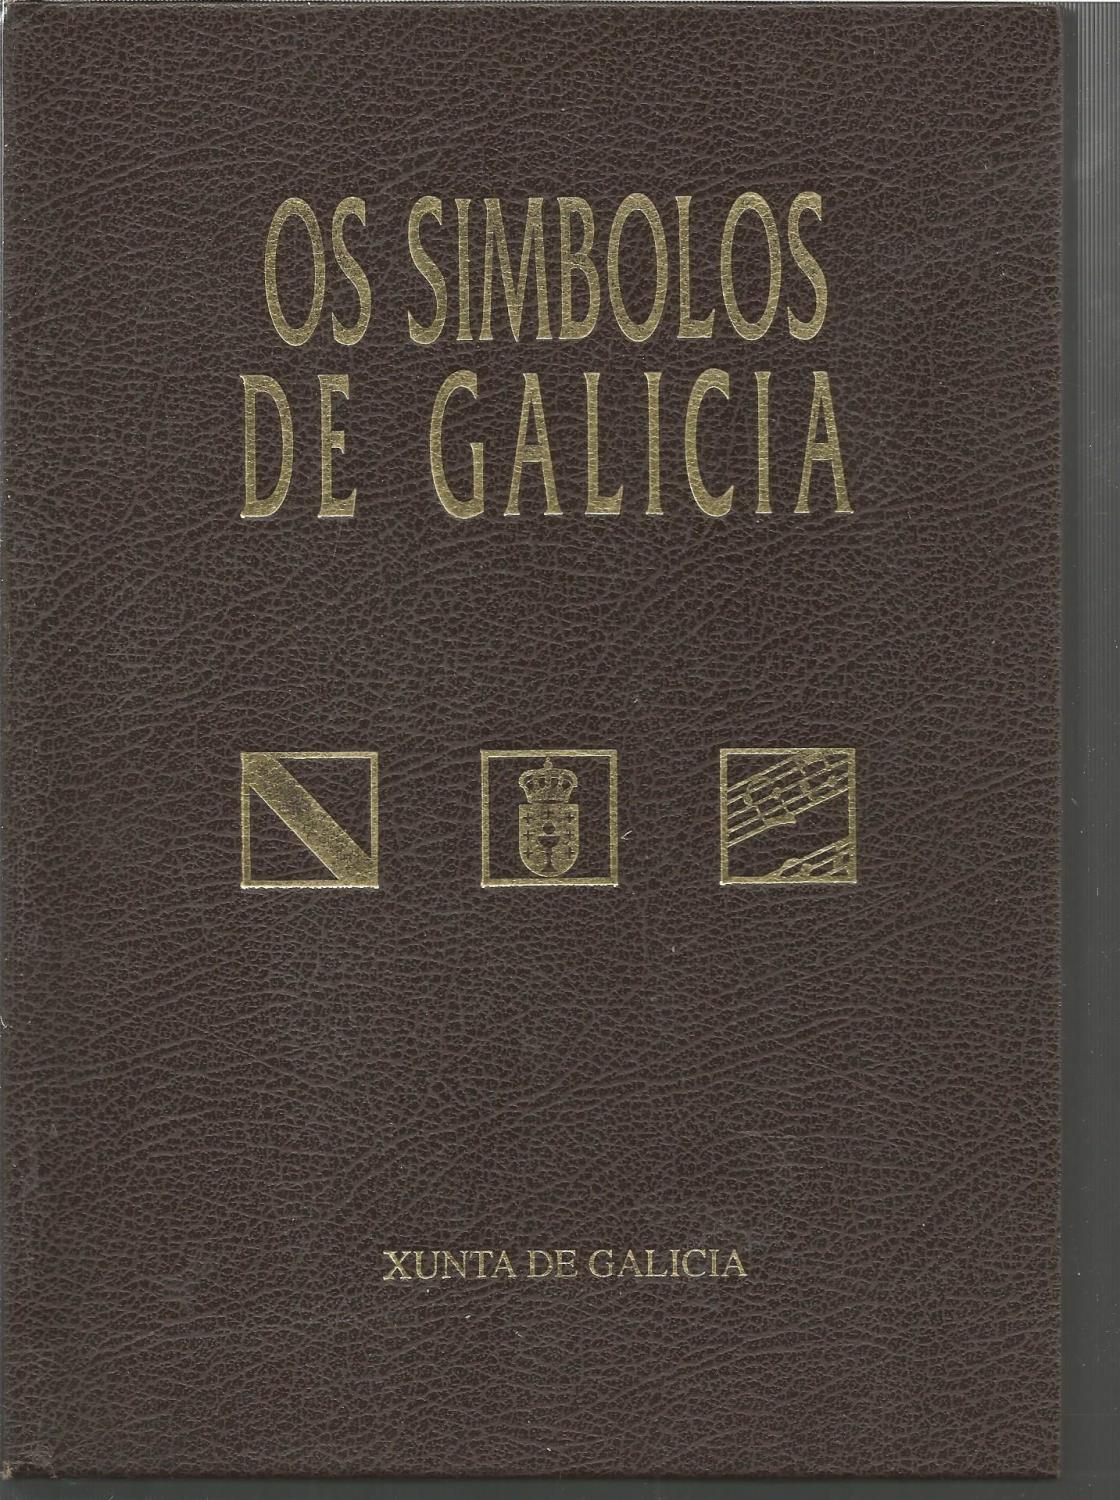 El escudo - Xunta de Galicia